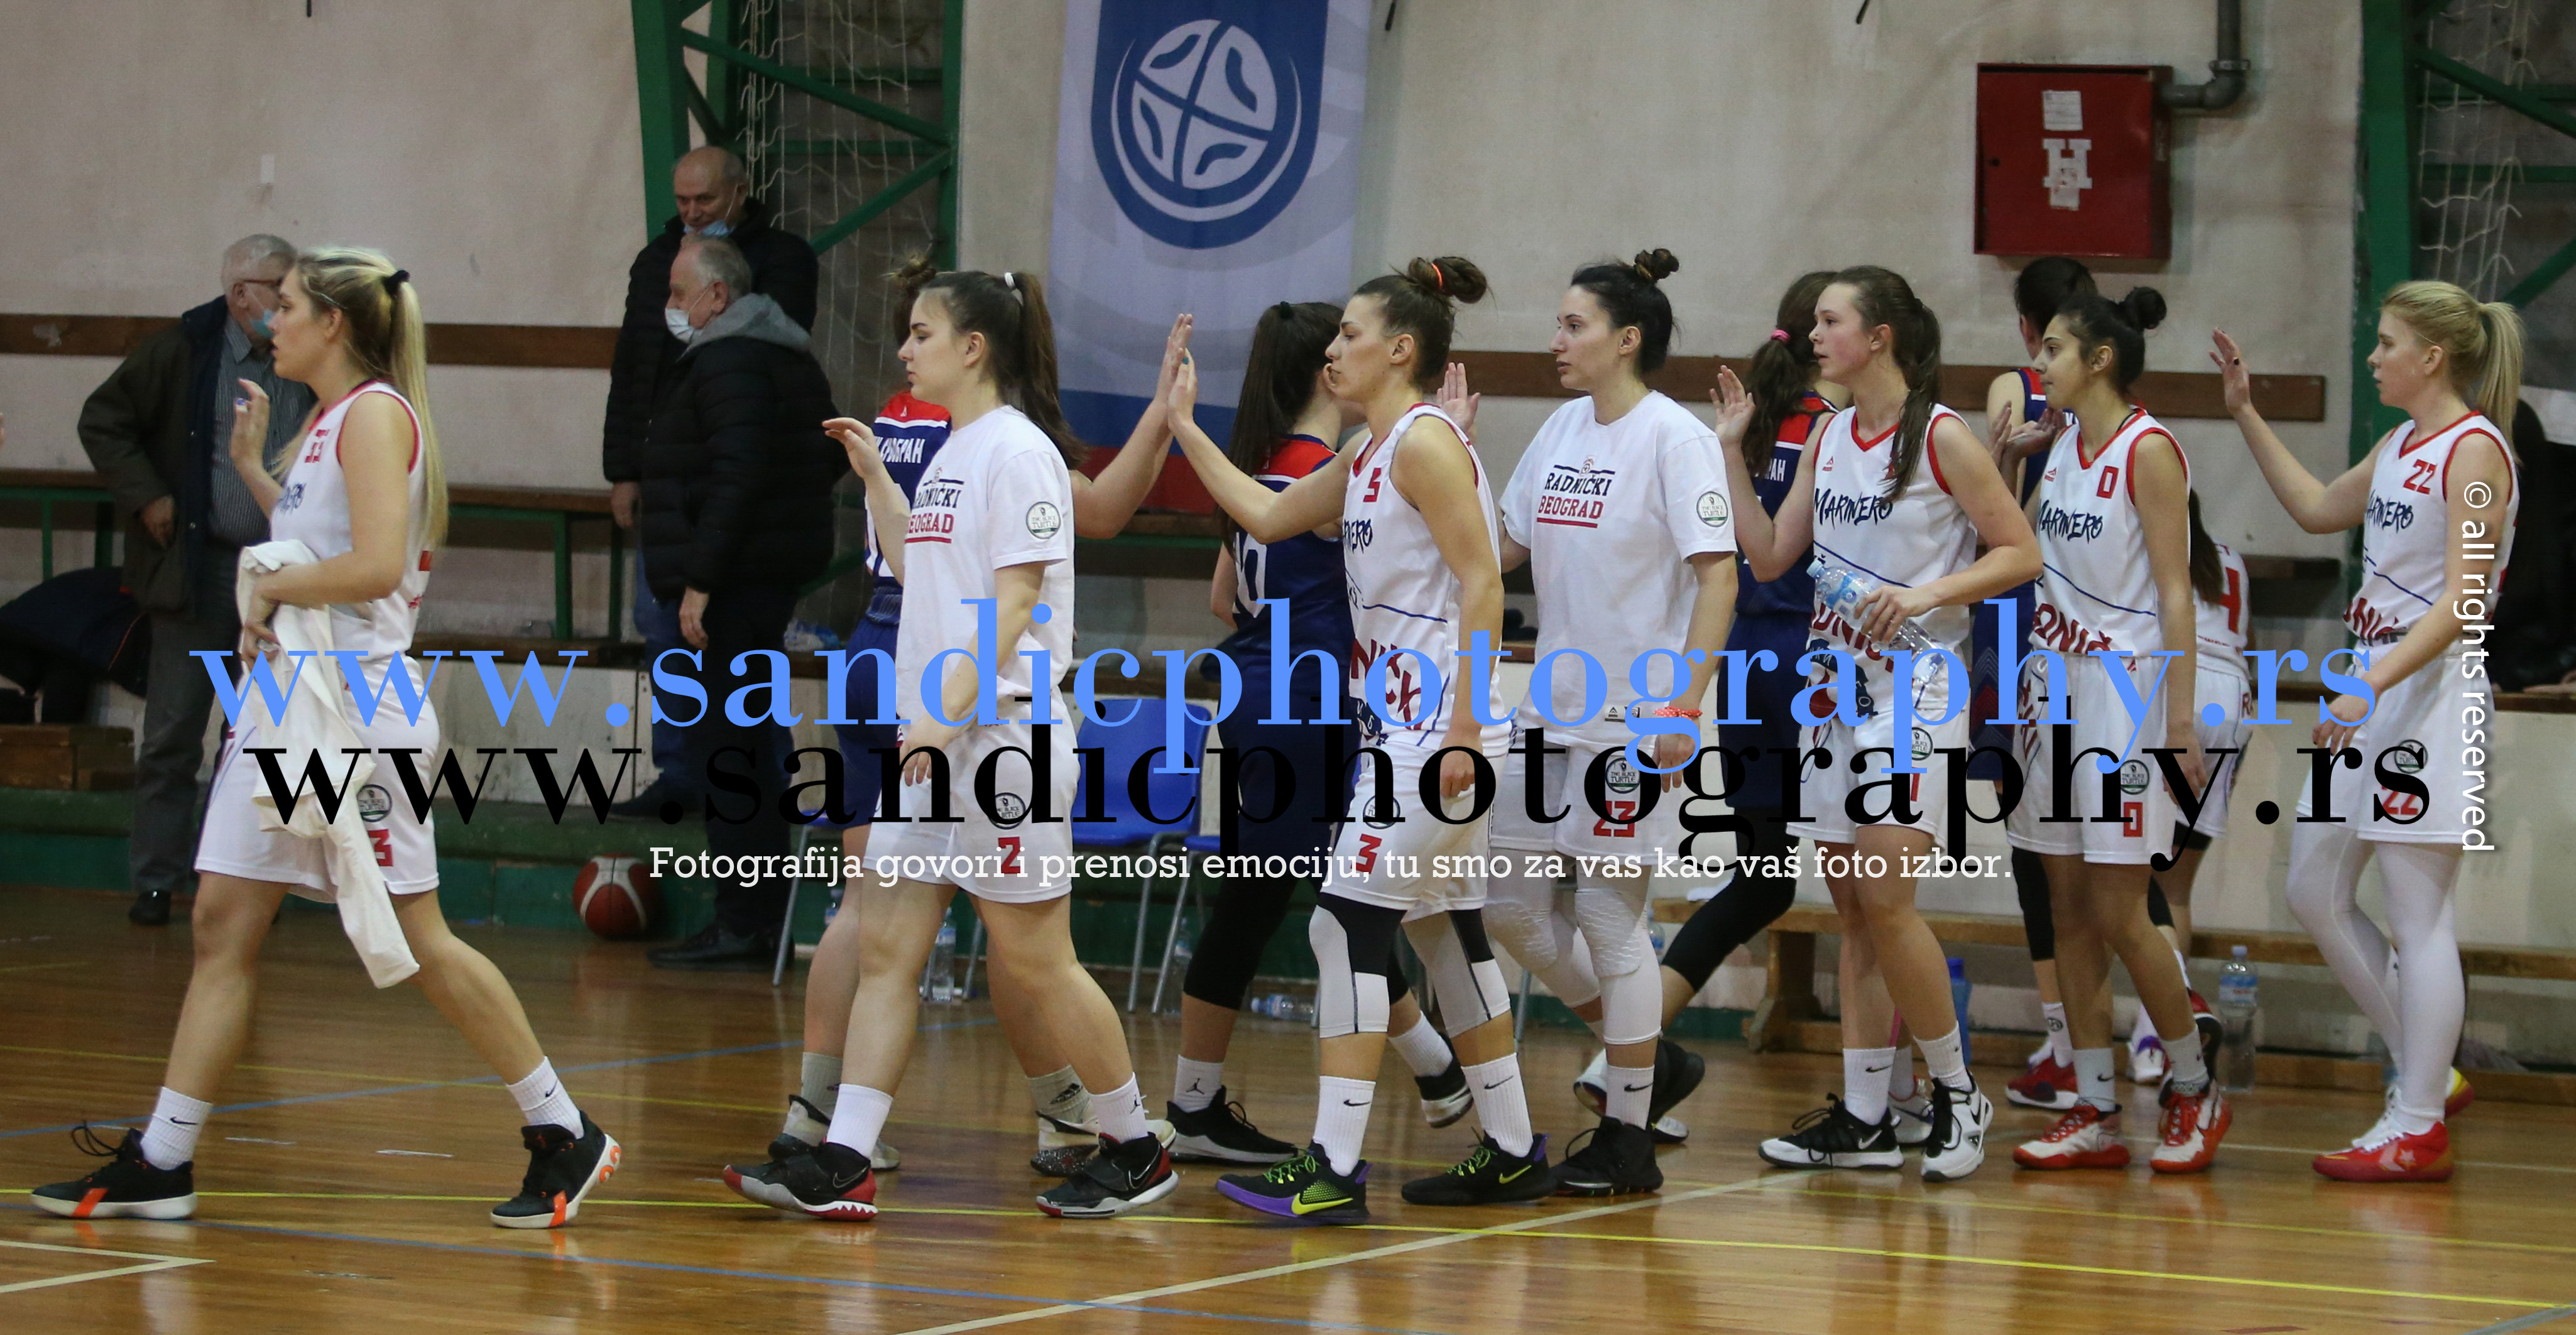 Radnicki Beograd (Women) Basketball team in Serbia → Radnicki